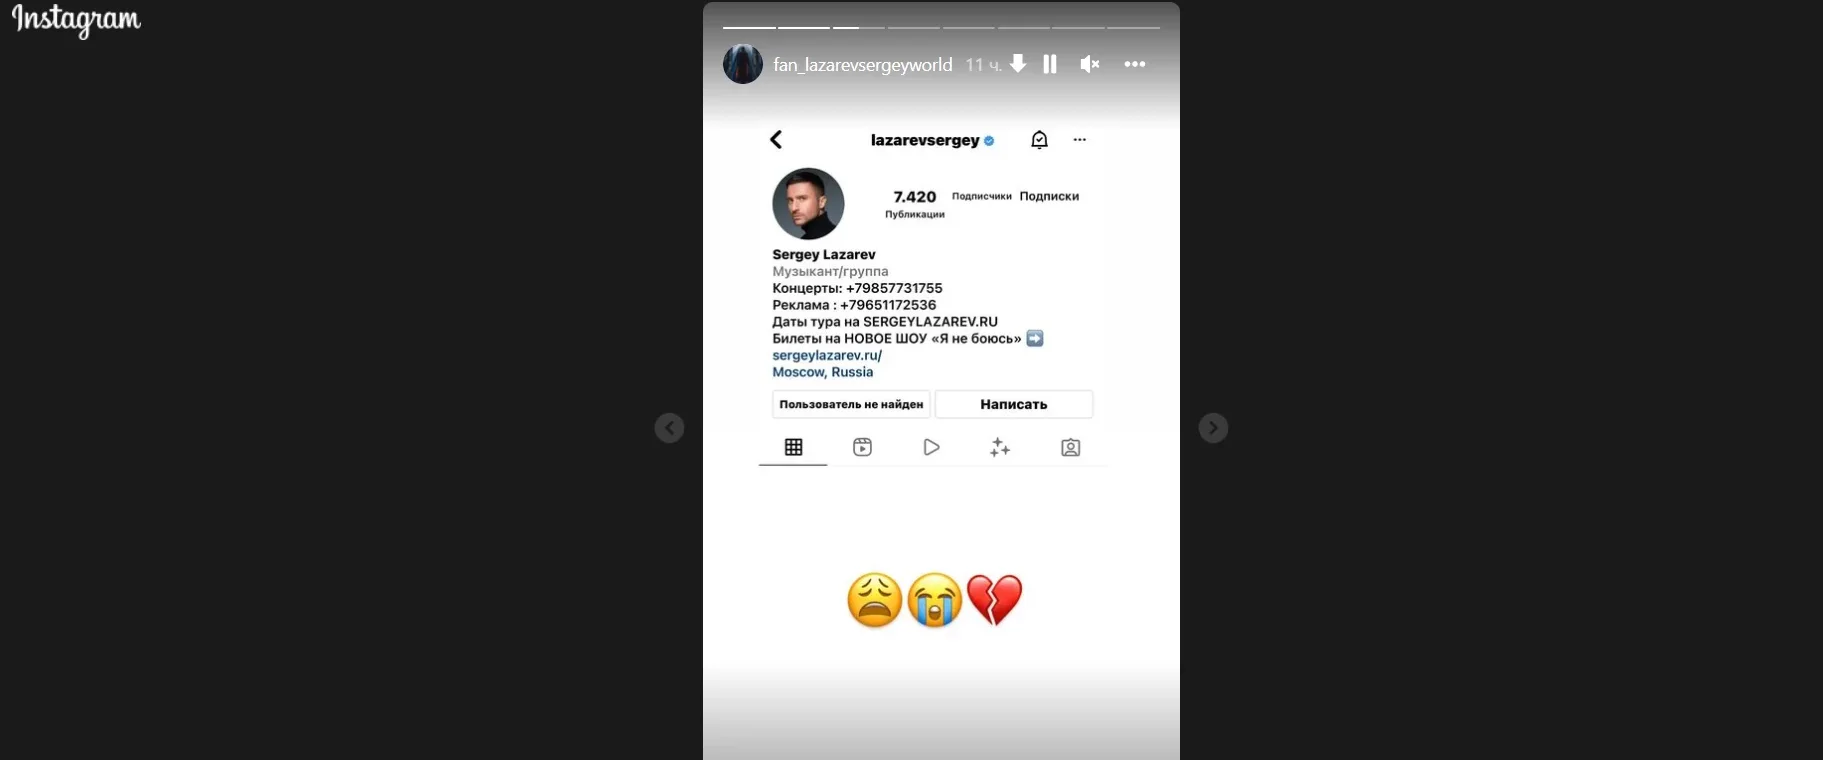 Аккаунт Сергея Лазарева исчез из Instagram после антивоенного высказывания - фото 1